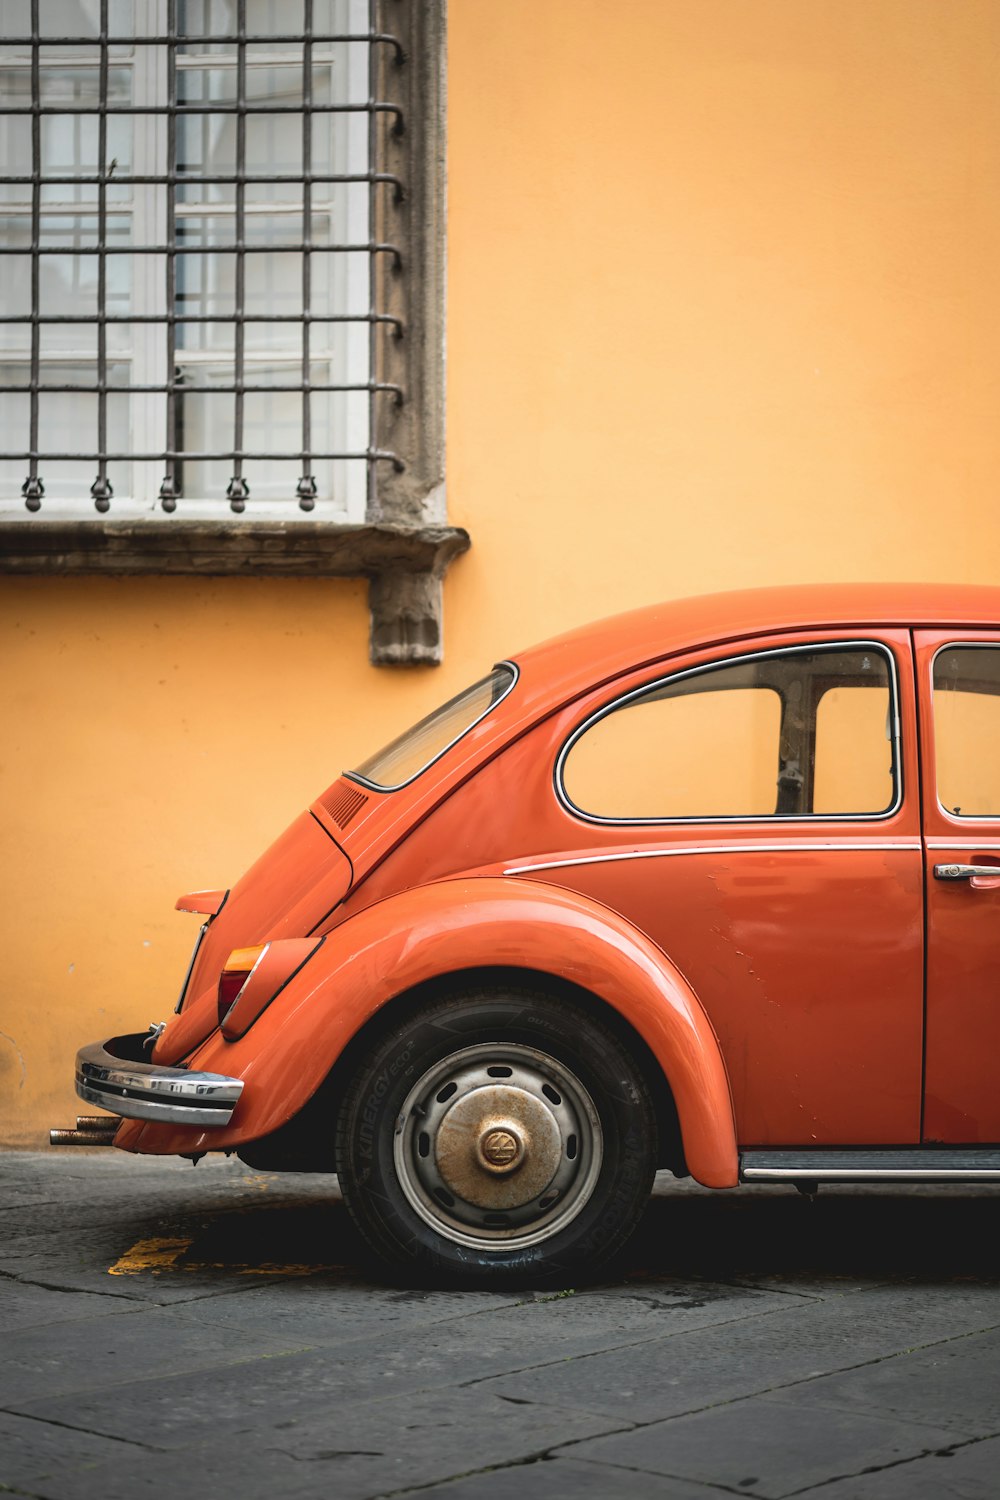 Foto mit flachem Fokus eines orangefarbenen VW Käfers